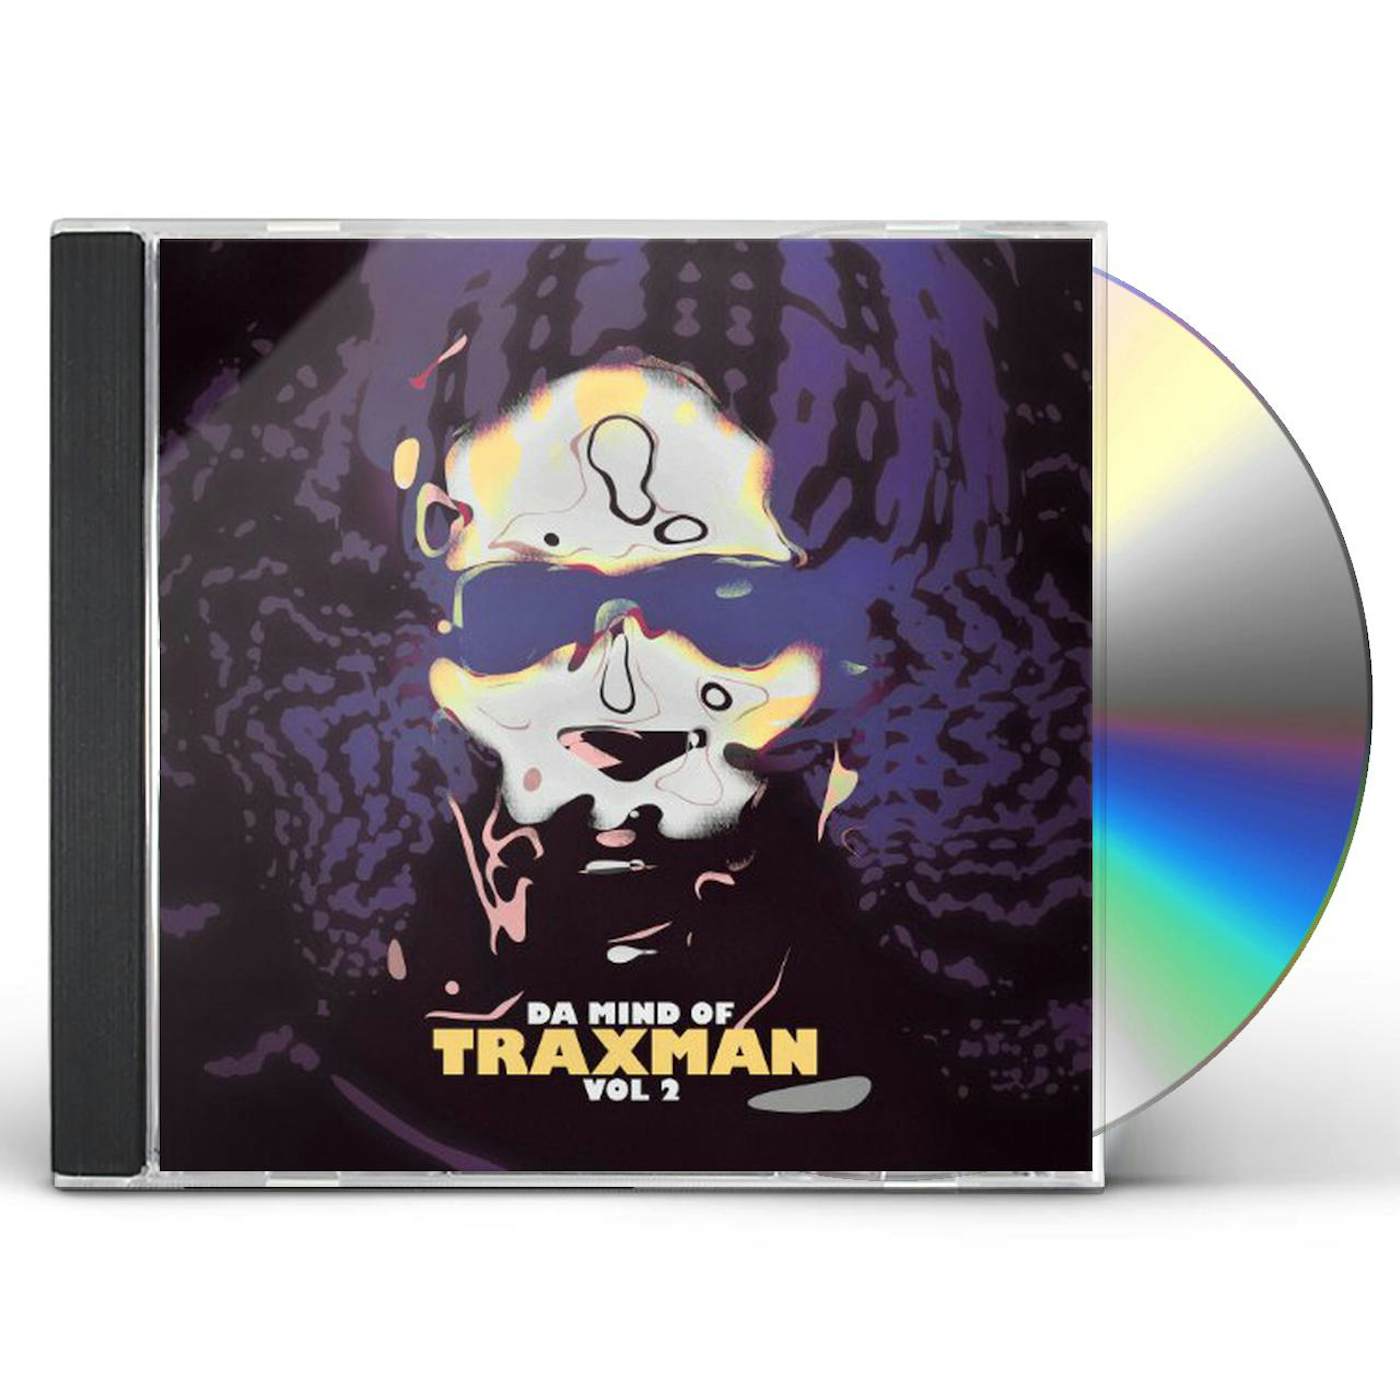 DA MIND OF TRAXMAN VOL 2 CD